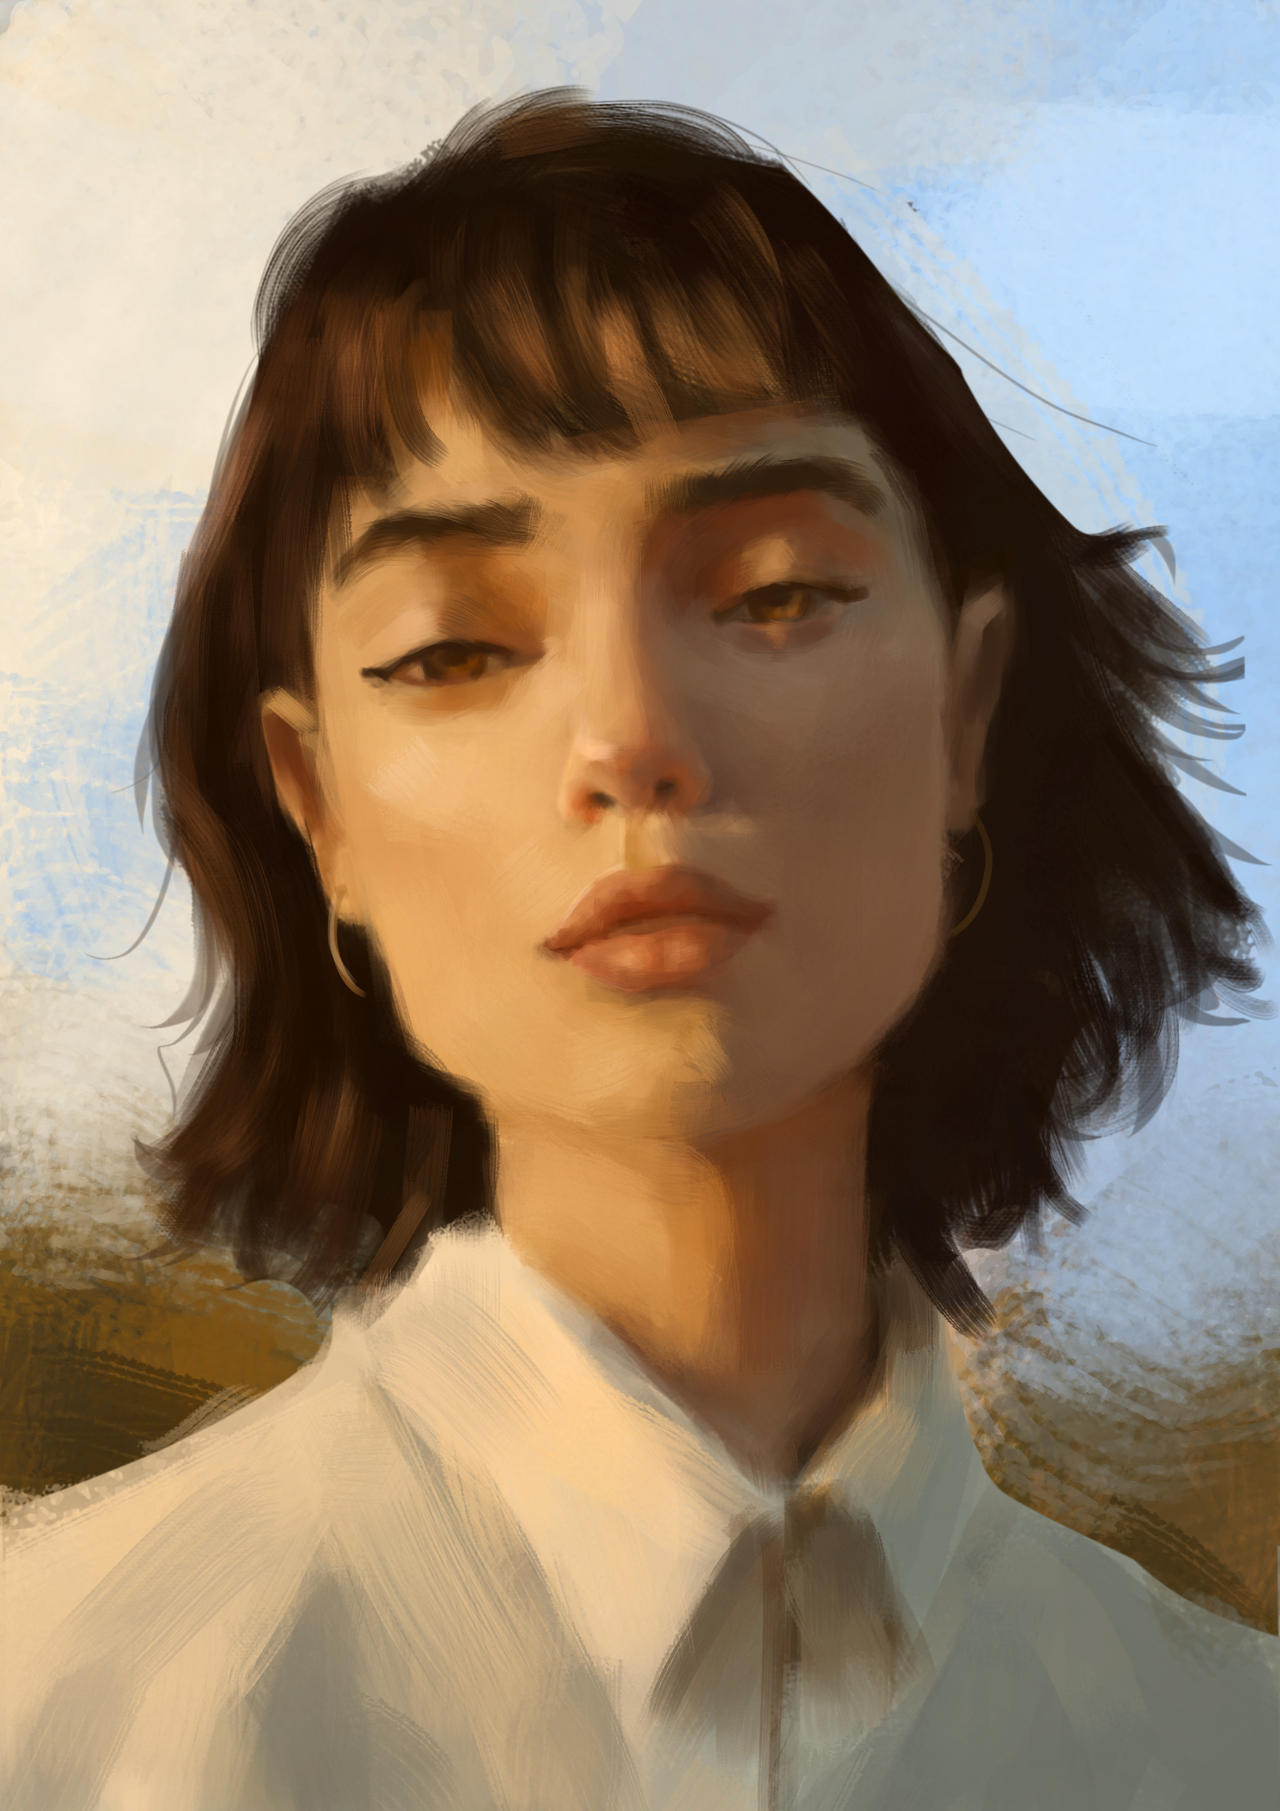 Sunlight portrait study by marcomacedoart on DeviantArt